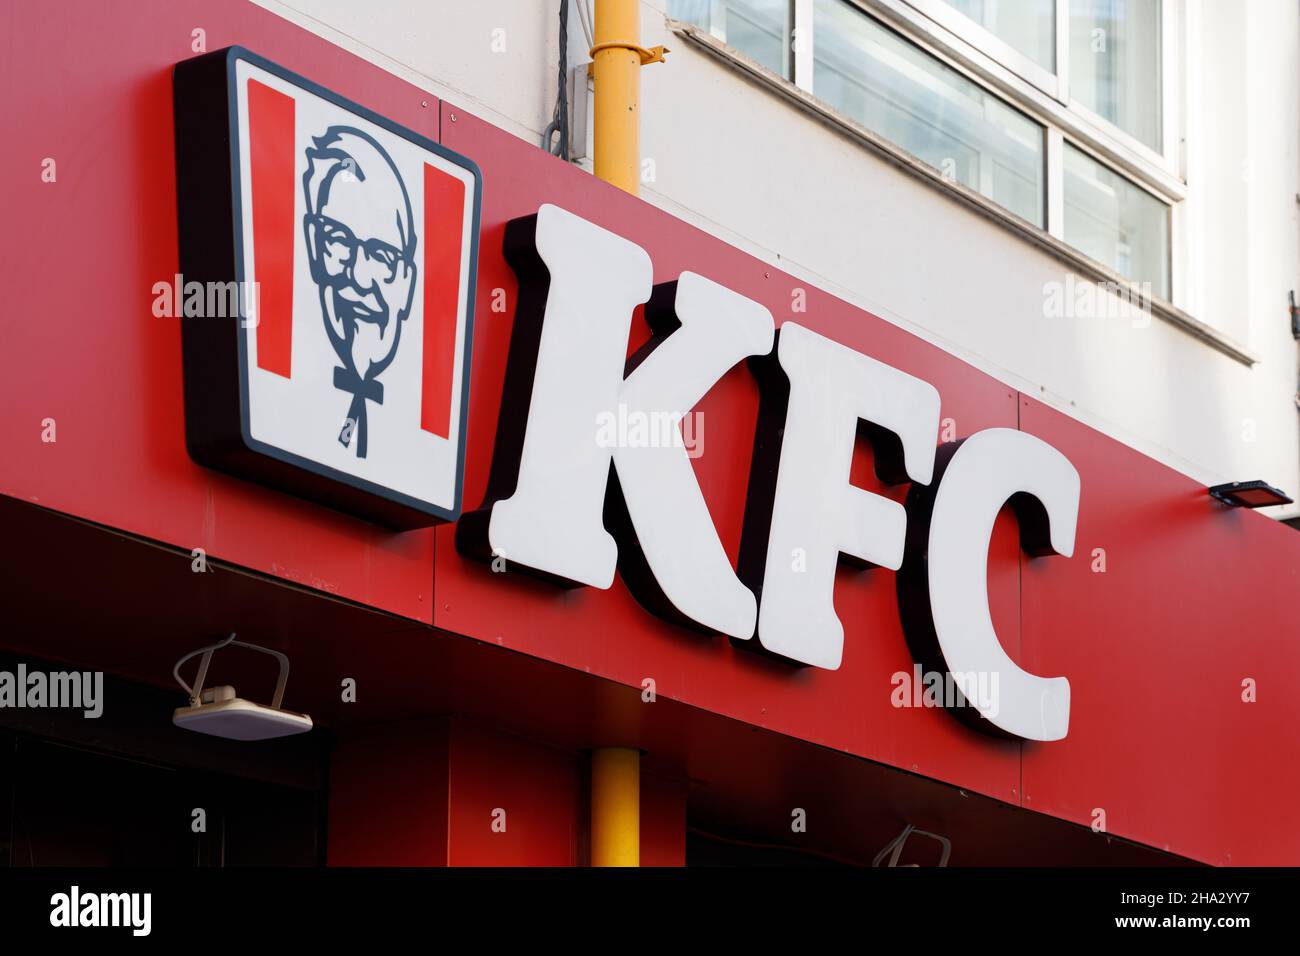 VALENCIA, SPANIEN - 09. DEZEMBER 2021: KFC ist eine amerikanische Fast-Food-Restaurantkette, die sich auf gebratenes Huhn spezialisiert hat Stockfoto